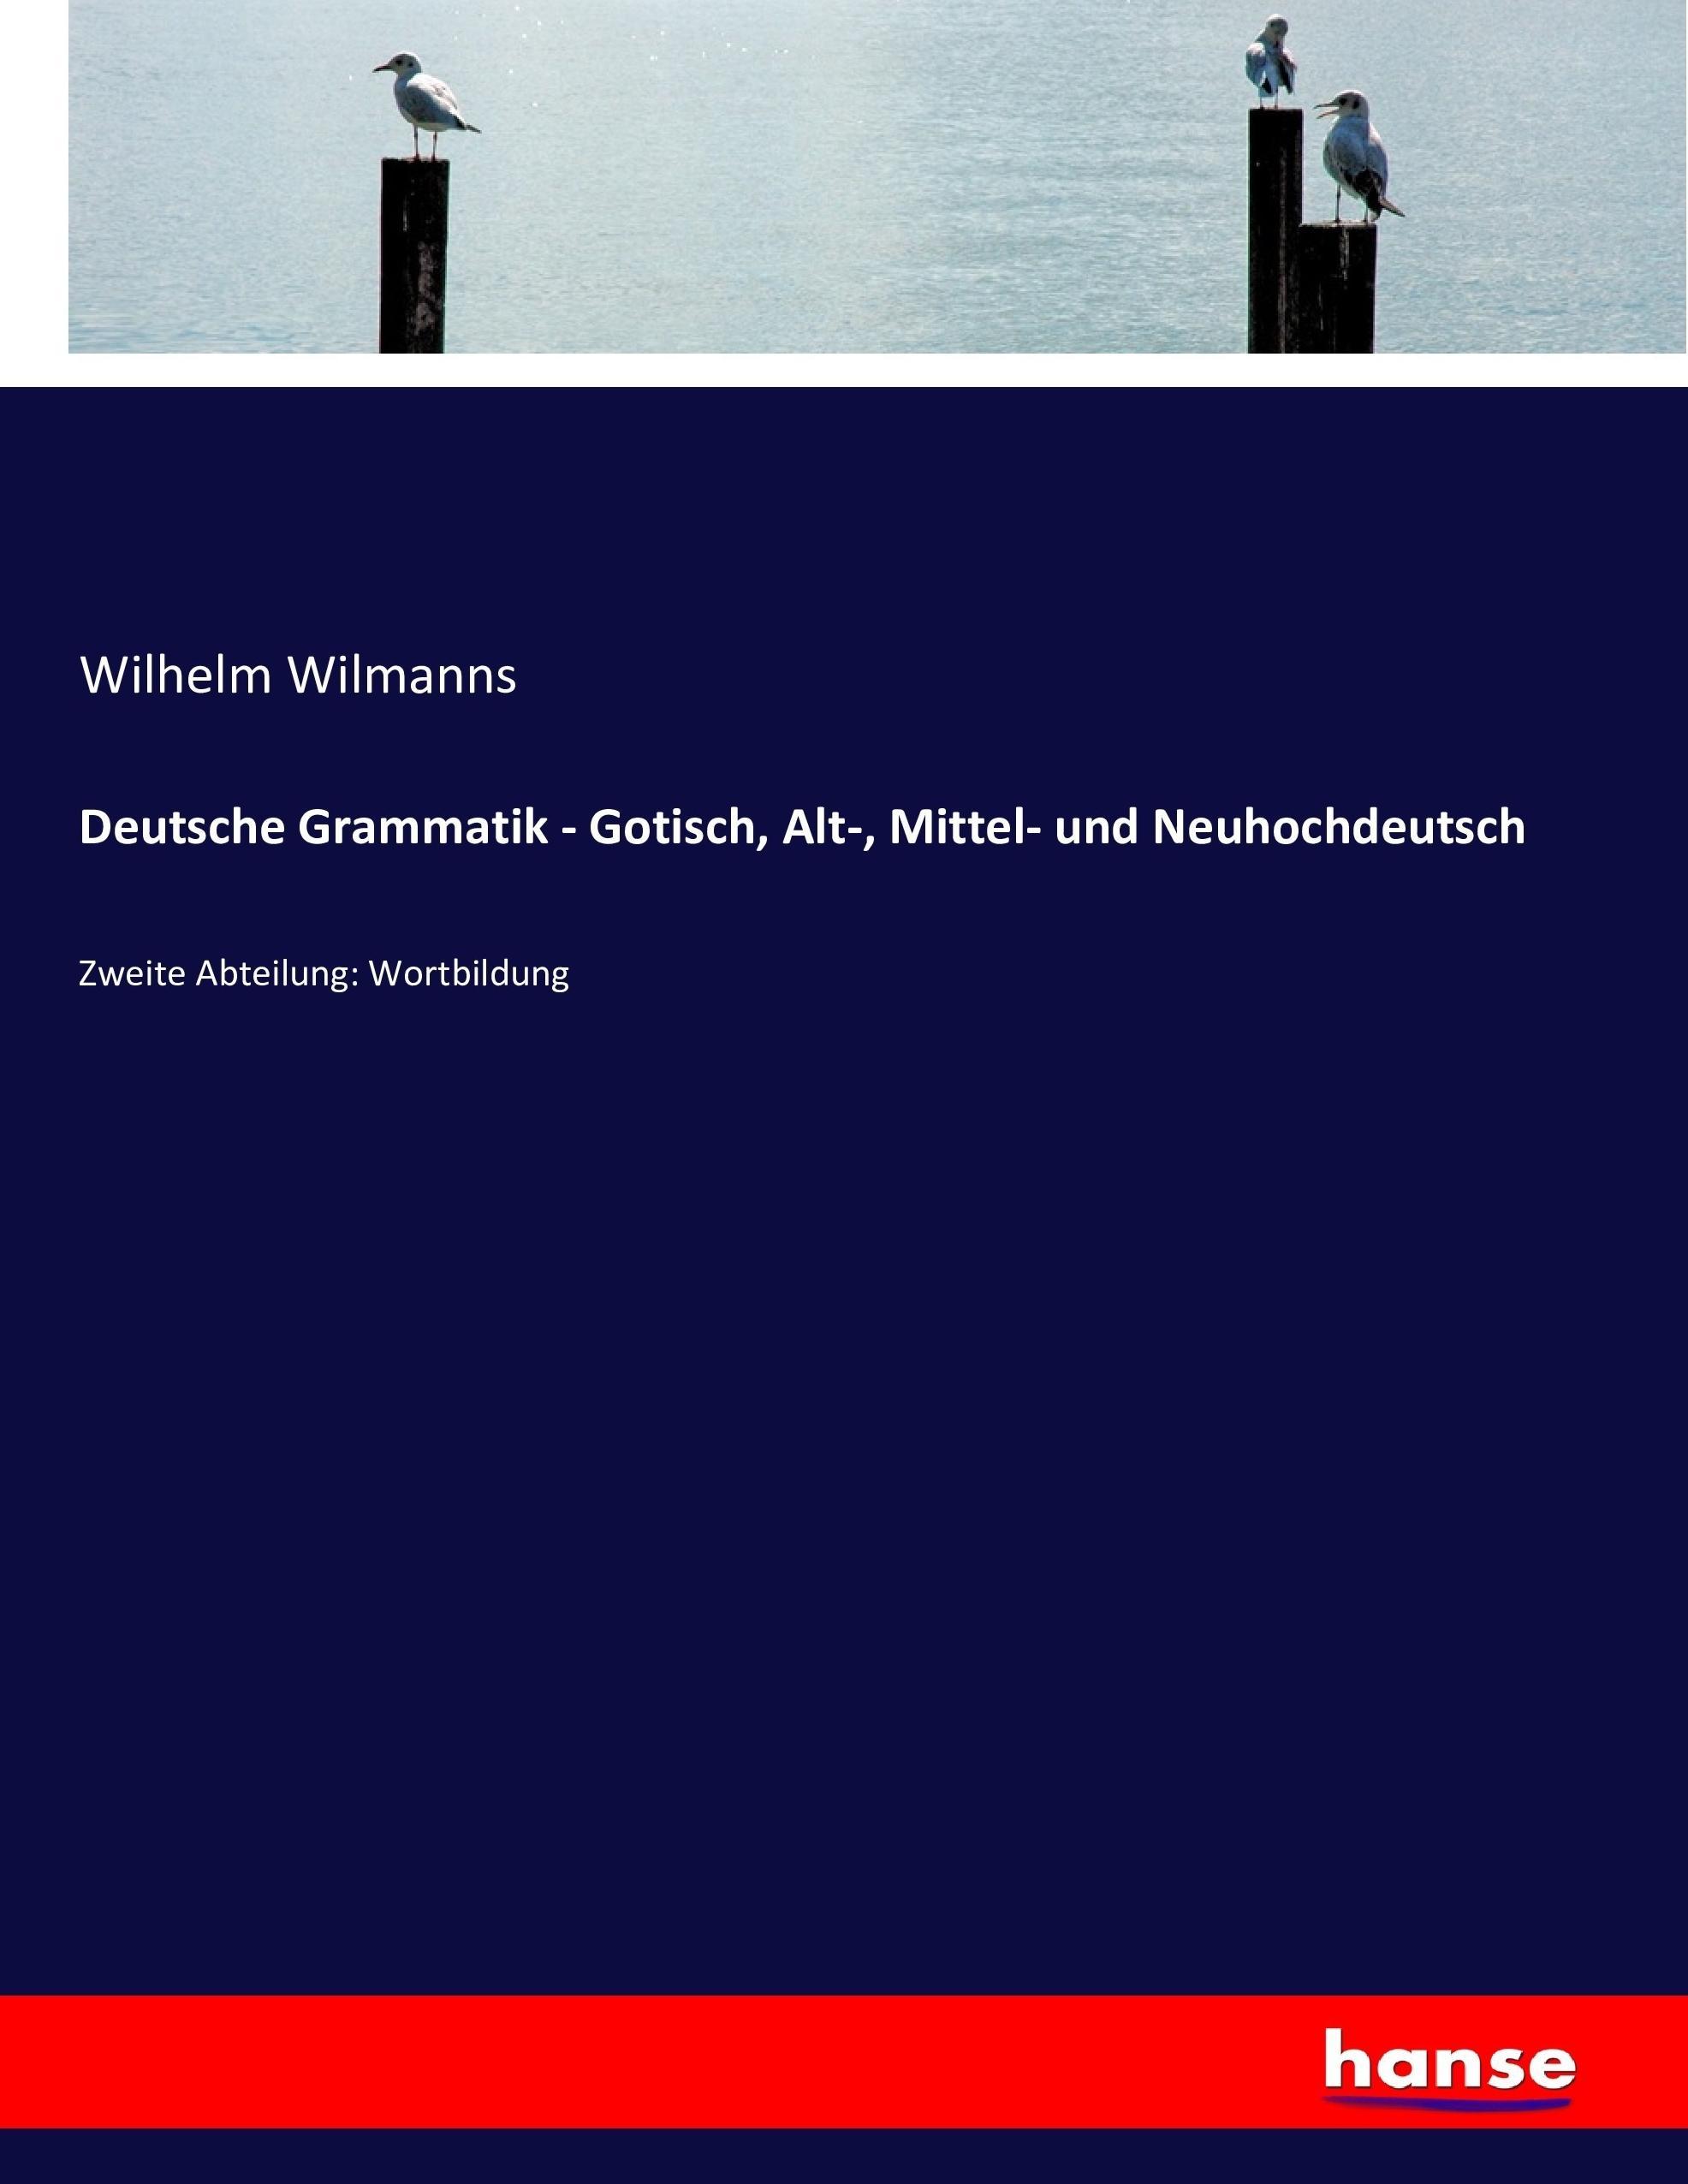 Deutsche Grammatik - Gotisch, Alt-, Mittel- und Neuhochdeutsch | Zweite Abteilung: Wortbildung | Wilhelm Wilmanns | Taschenbuch | Paperback | 692 S. | Deutsch | 2016 | hansebooks | EAN 9783743484191 - Wilmanns, Wilhelm